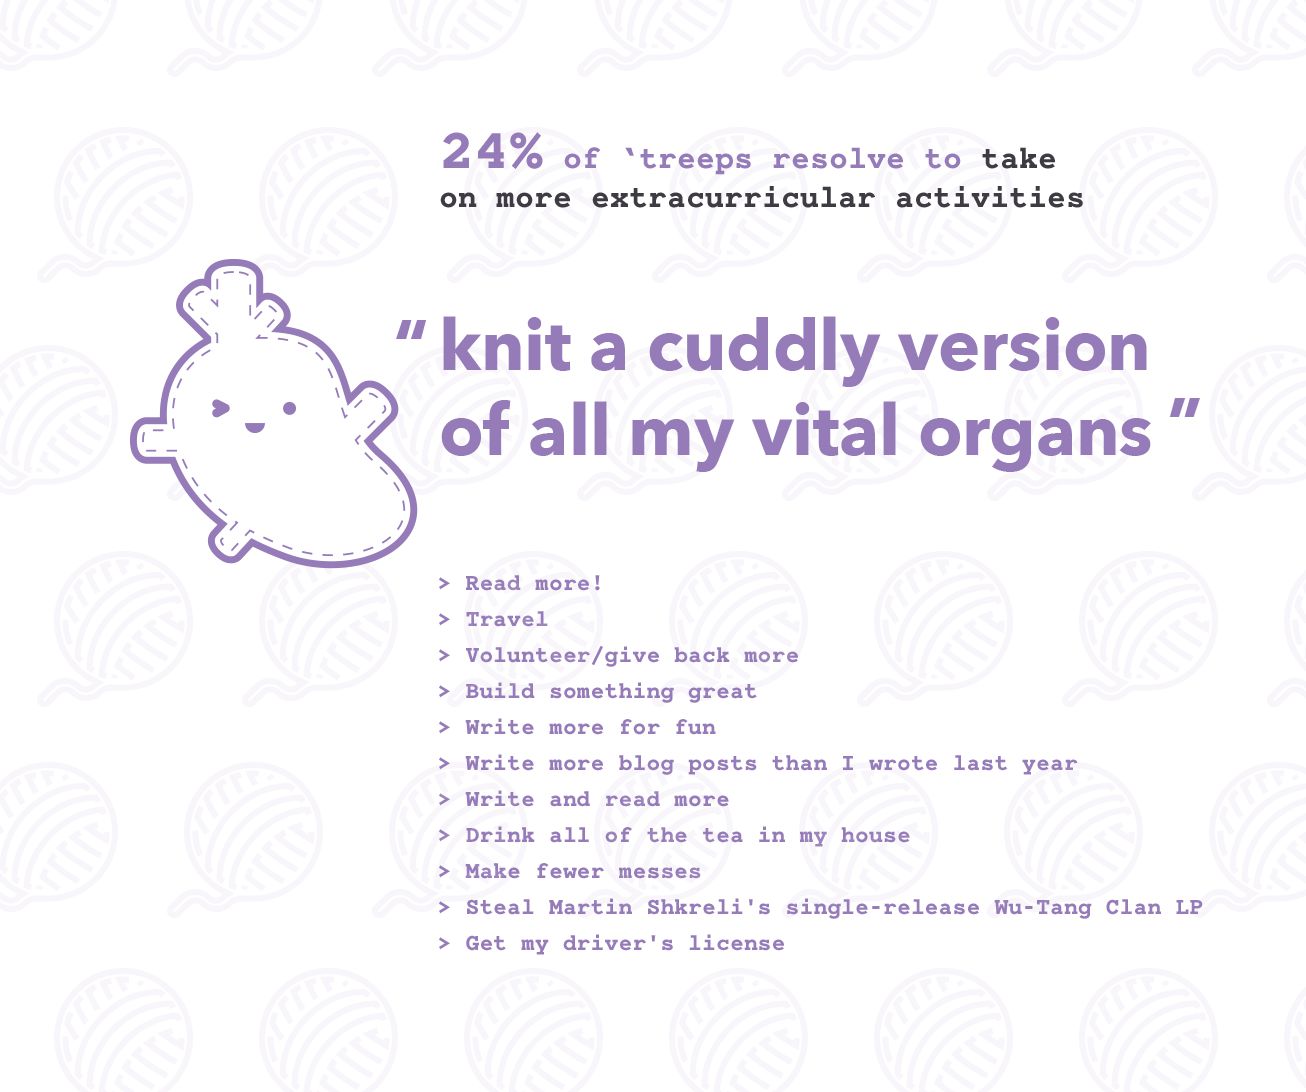 Knit a cuddly version